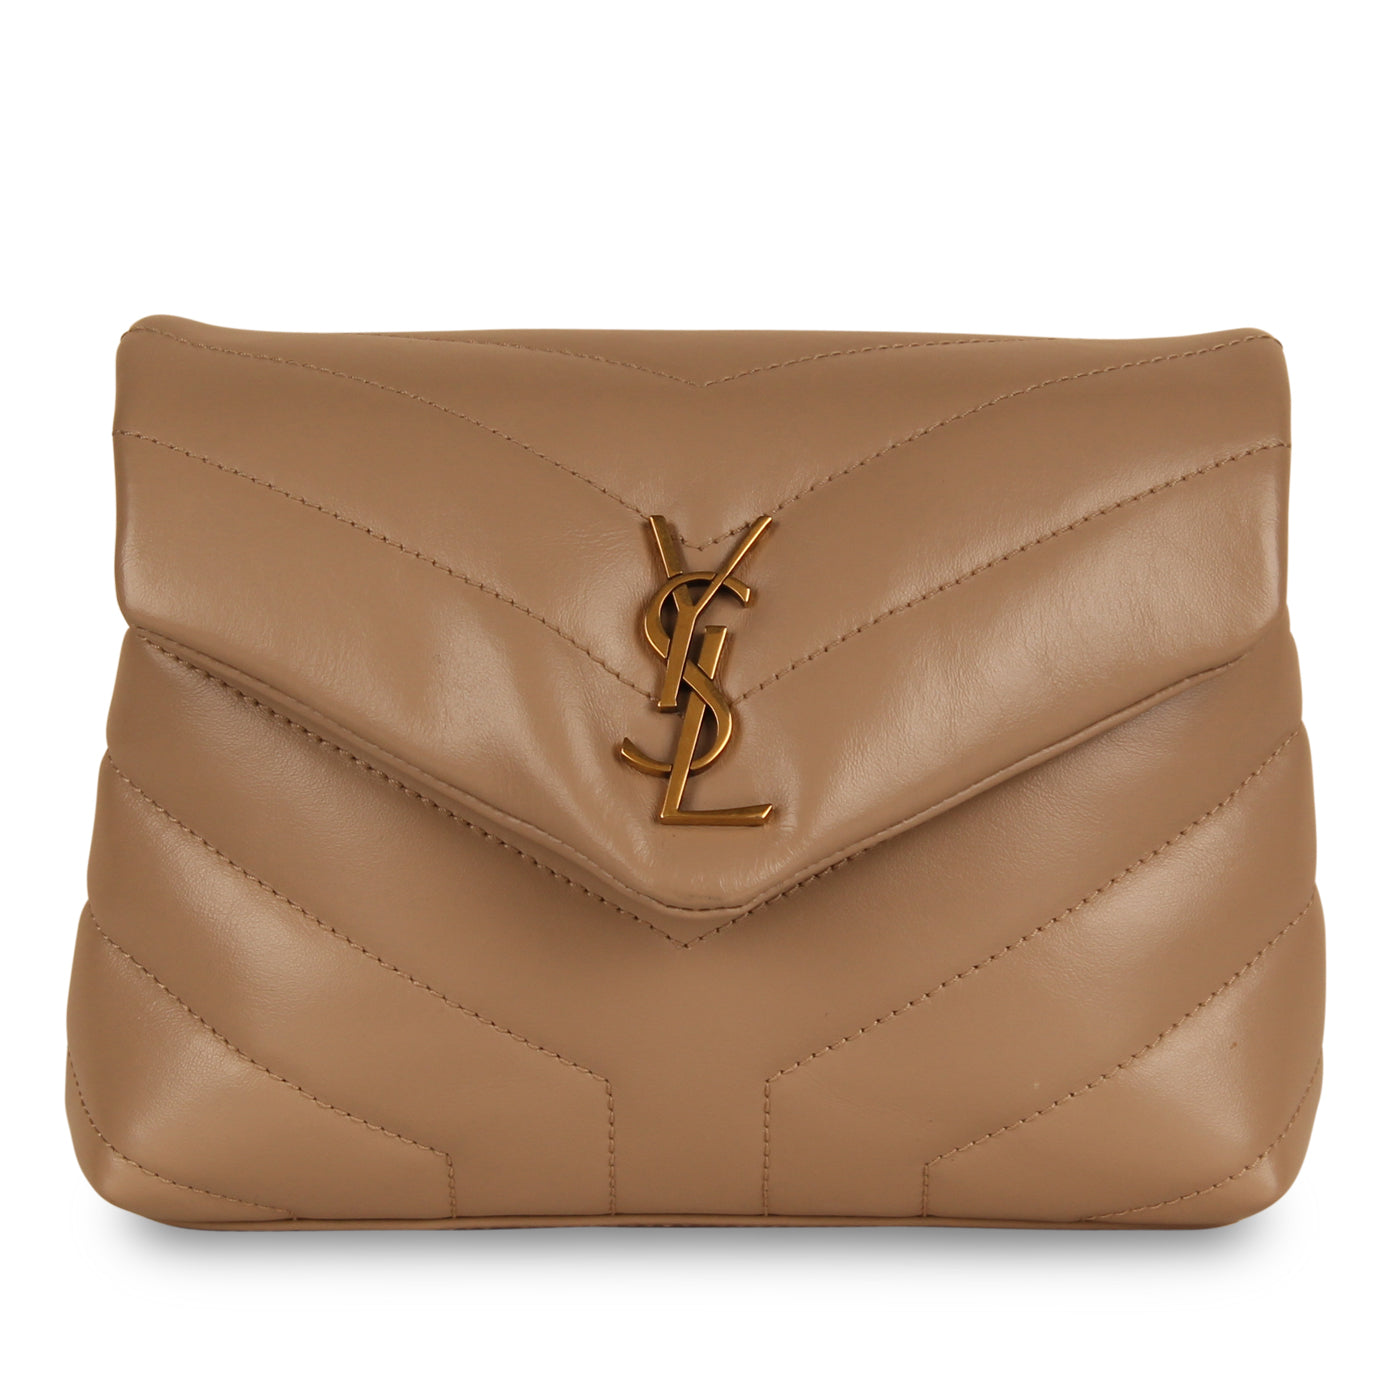 Authentic YSL Saint Laurent tan gold zipper wallet - Depop